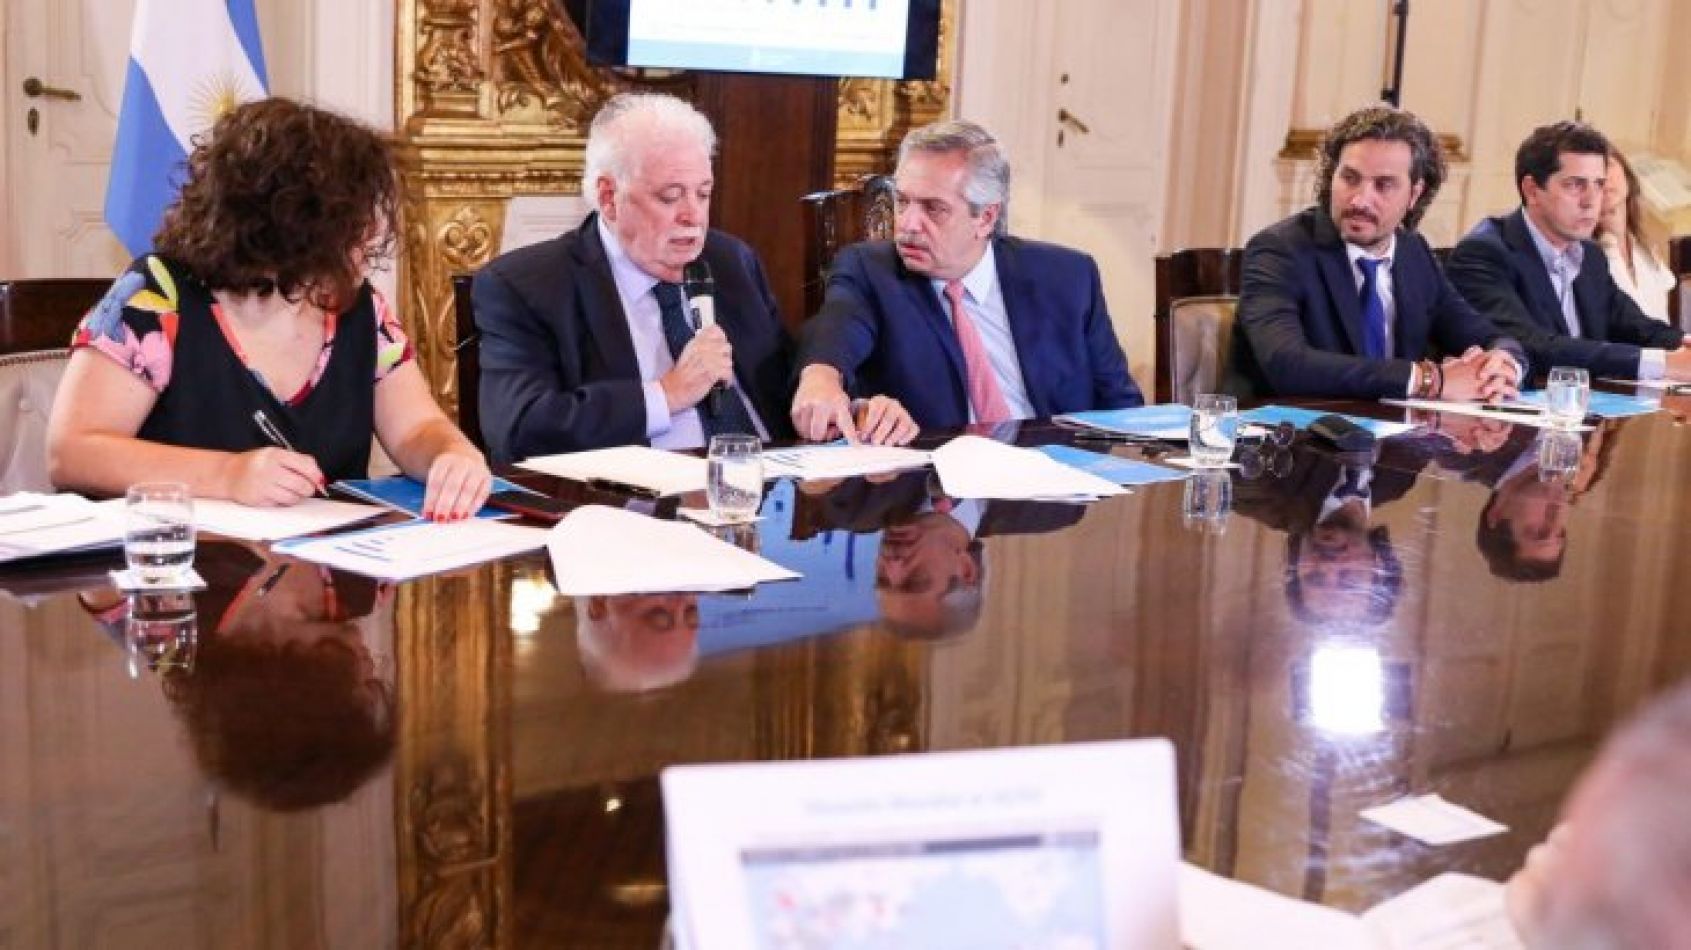 El Presidente y su Gabinete debaten la situación del país ante el coronavirus